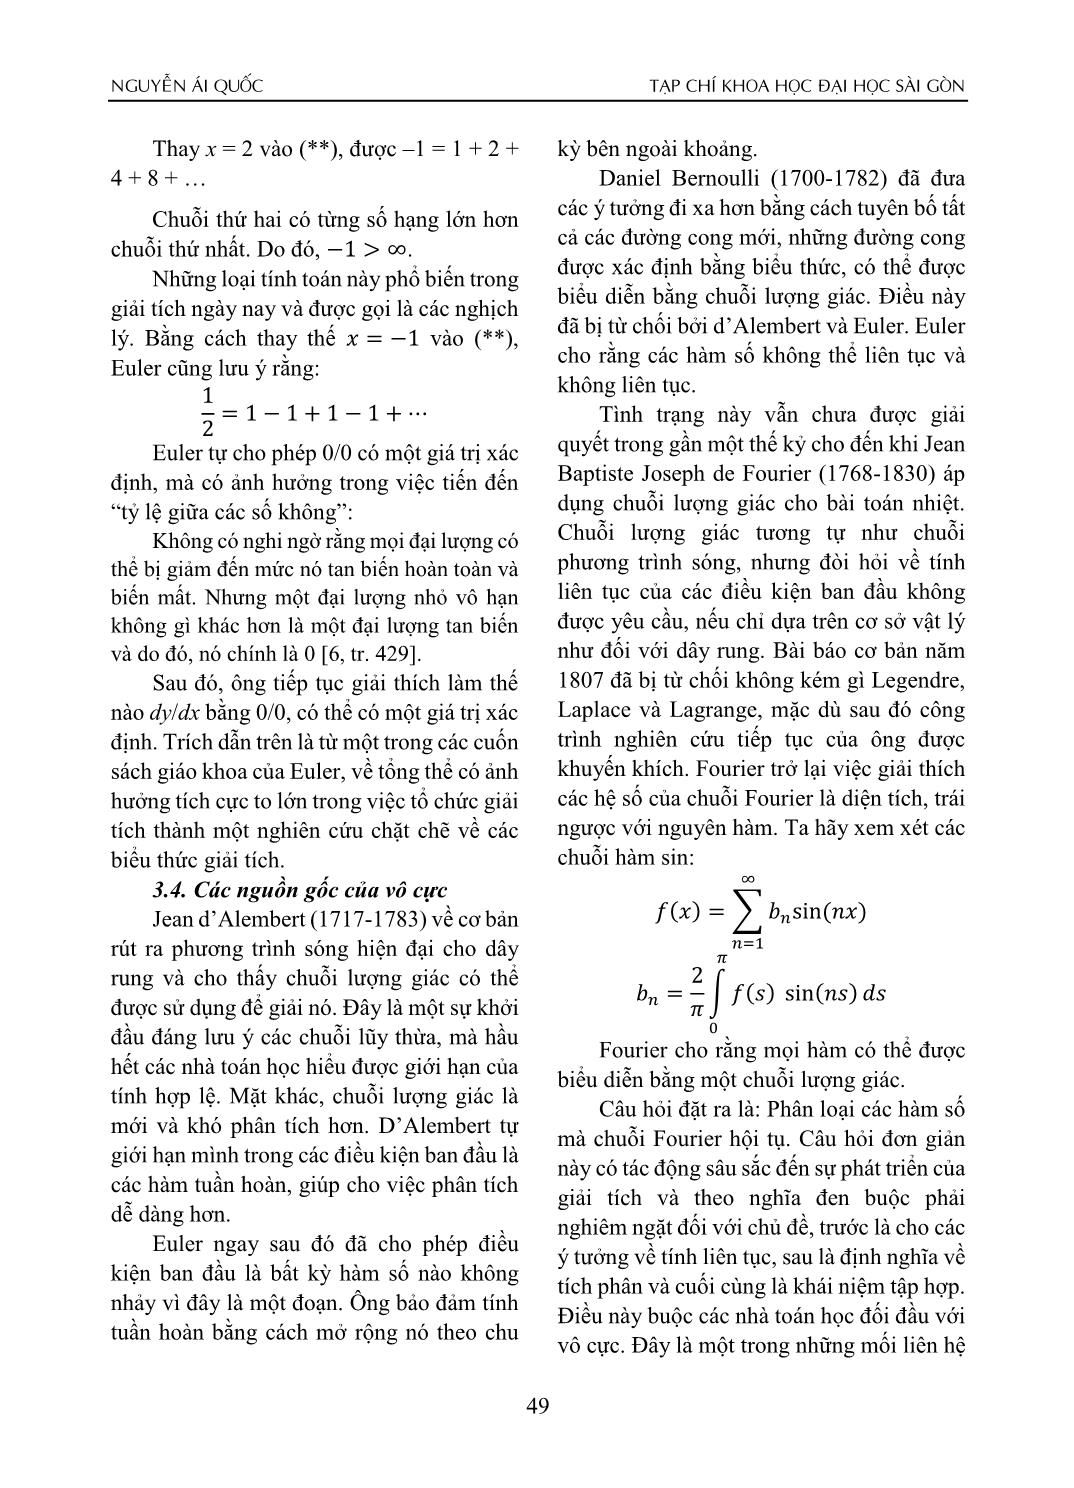 Đặc trưng và chướng ngại tri thức luận của khái niệm vô cực trong toán học trang 7